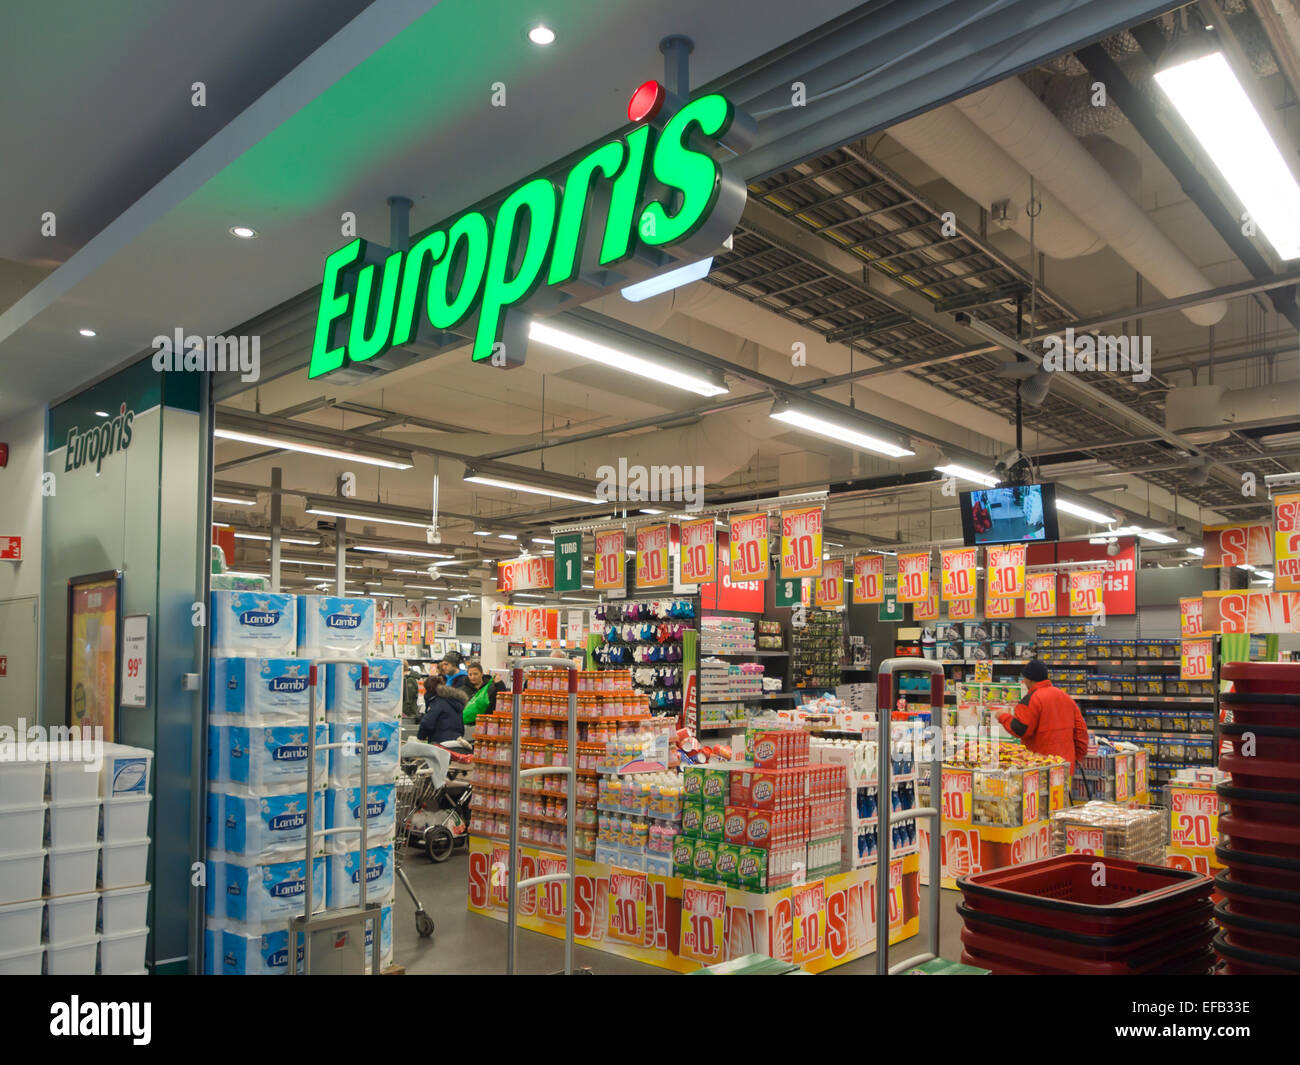 Europris, basso prezzo della catena di negozi in Norvegia con negozi di generi alimentari e altre esigenze quotidiane Foto Stock